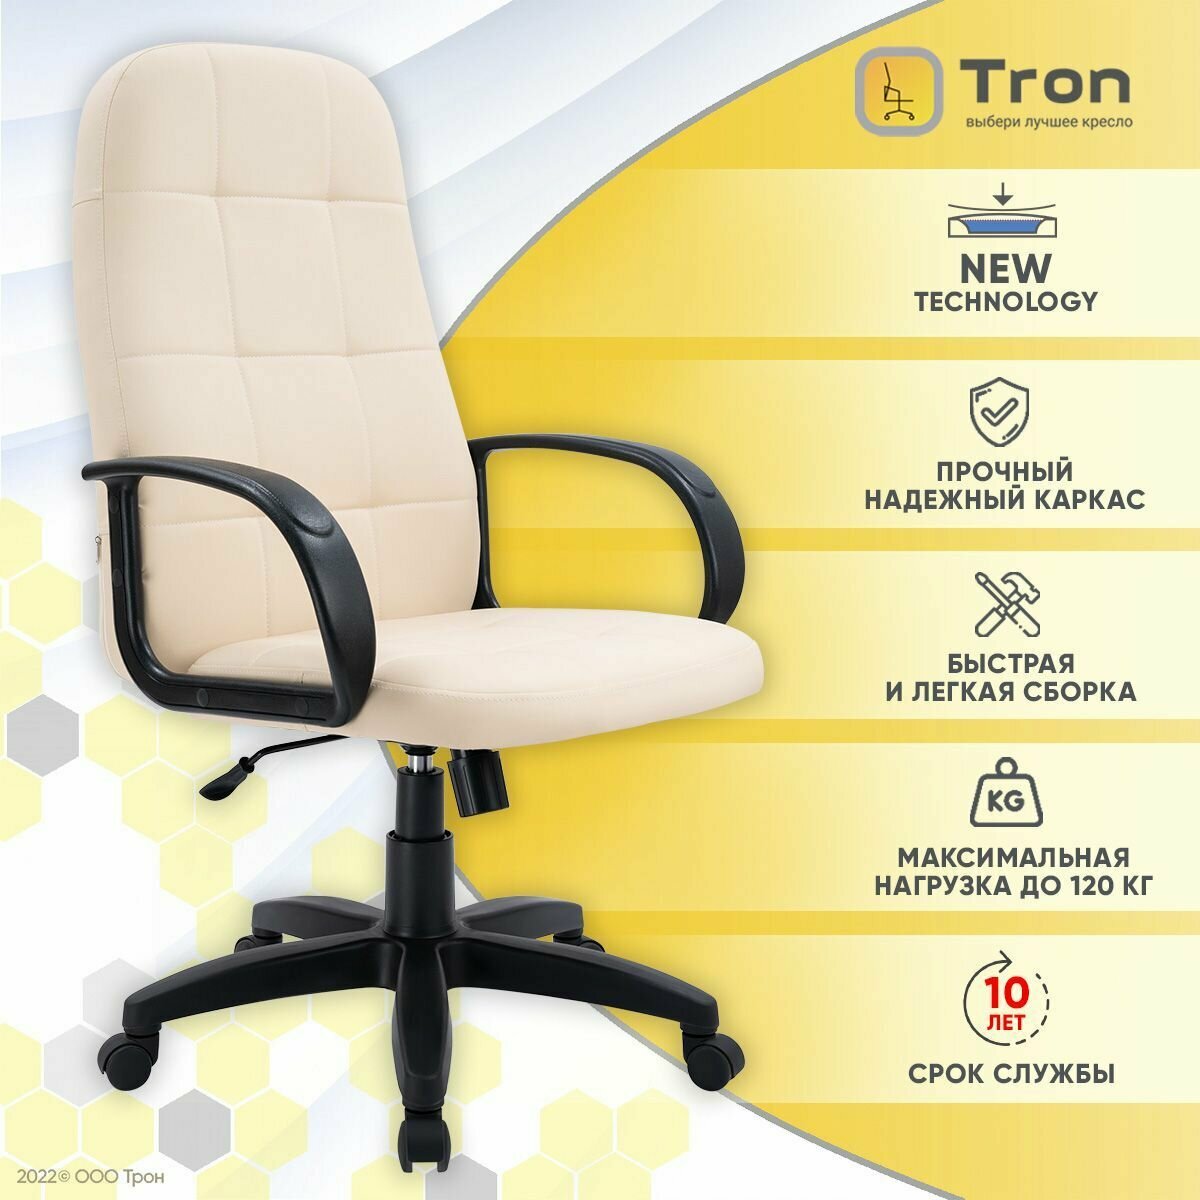 Кресло компьютерное офисное Tron V1 экокожа Prestige/ Standart-1021, бежевый